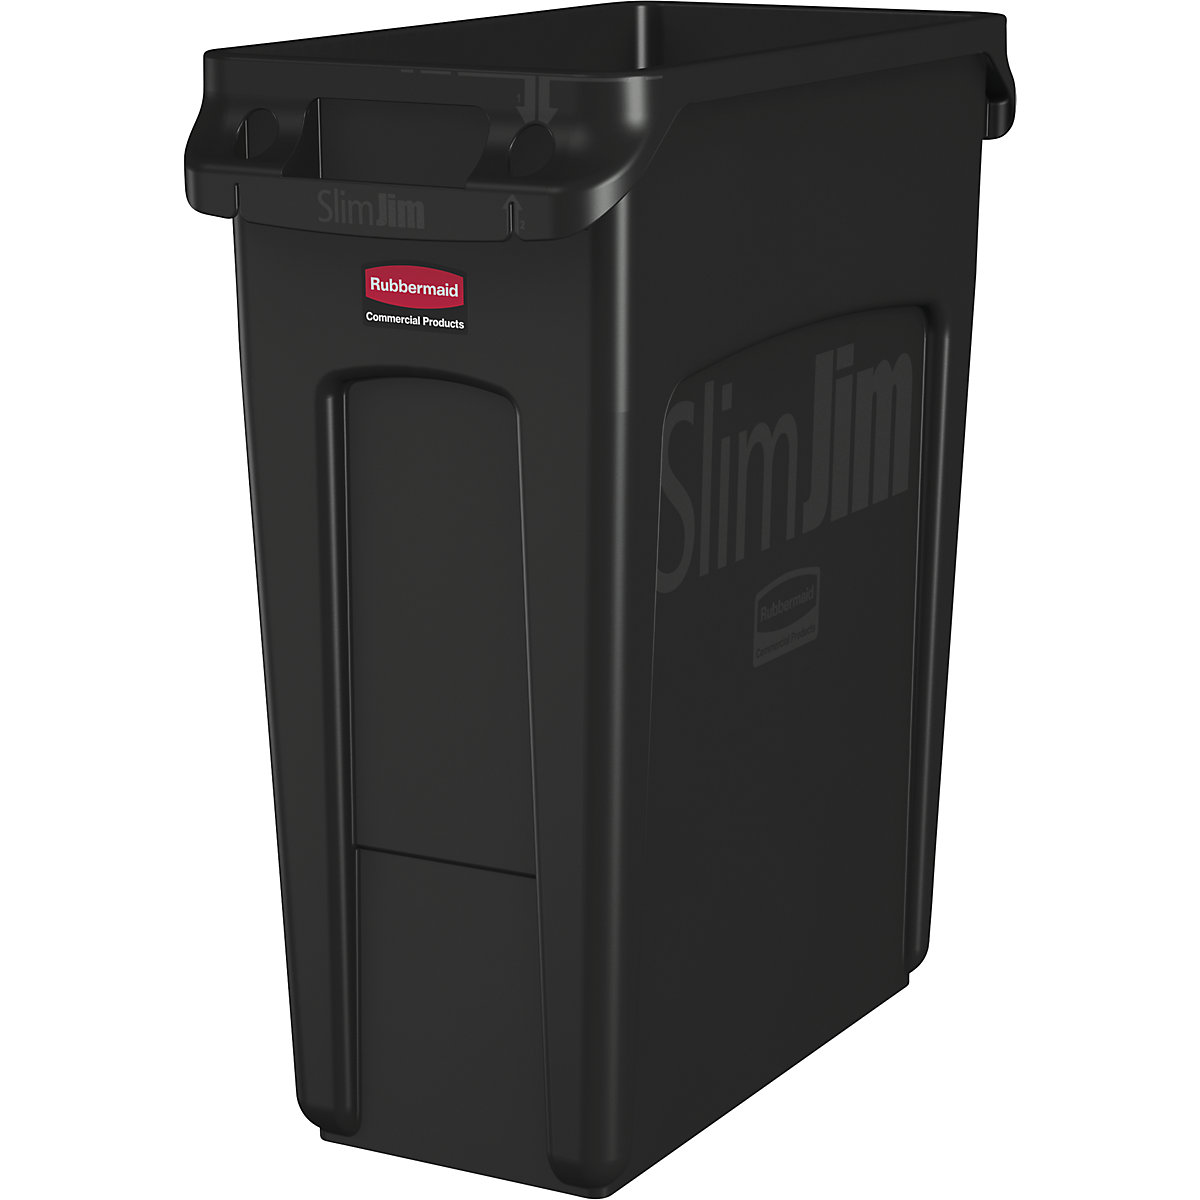 SLIM JIM® szelektív hulladékgyűjtő/szemetesvödör – Rubbermaid, űrtartalom 60 l, szellőzőcsatornákkal, fekete, 3 db-tól-13